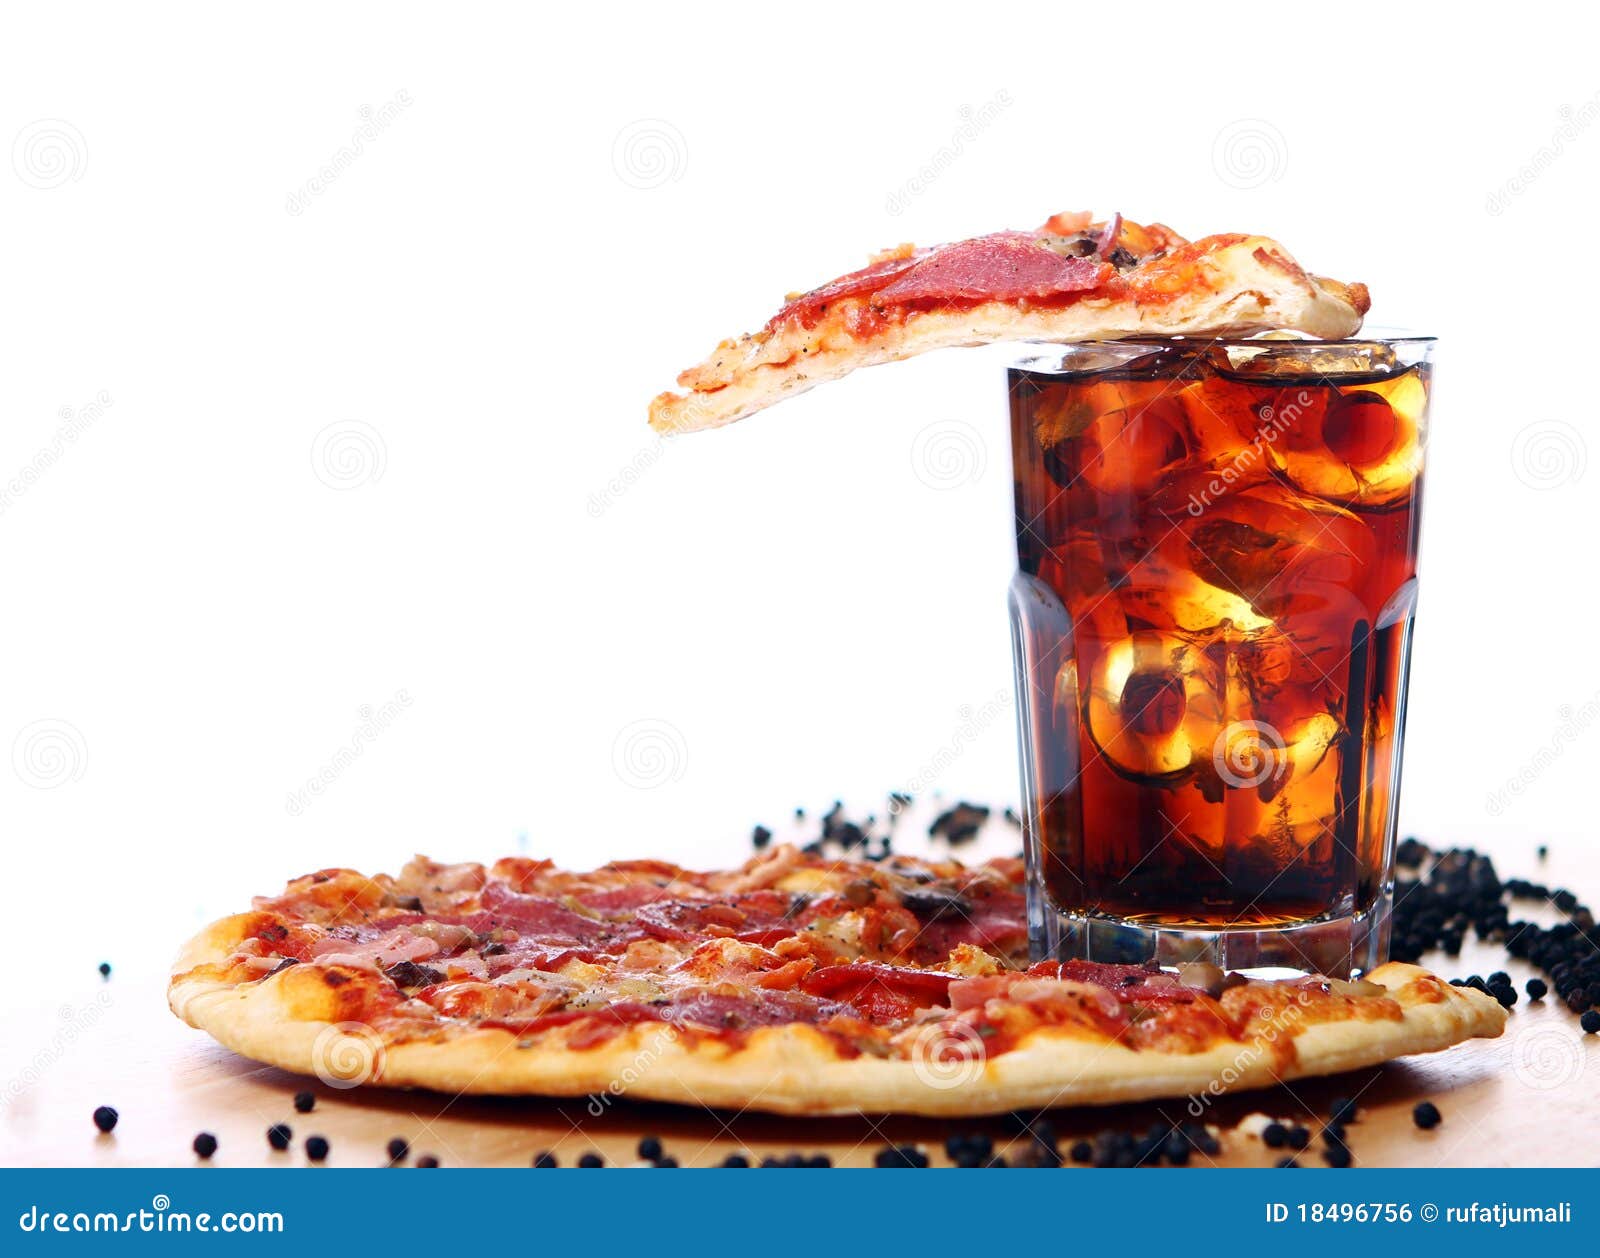 фотография пиццы и колы фото 66